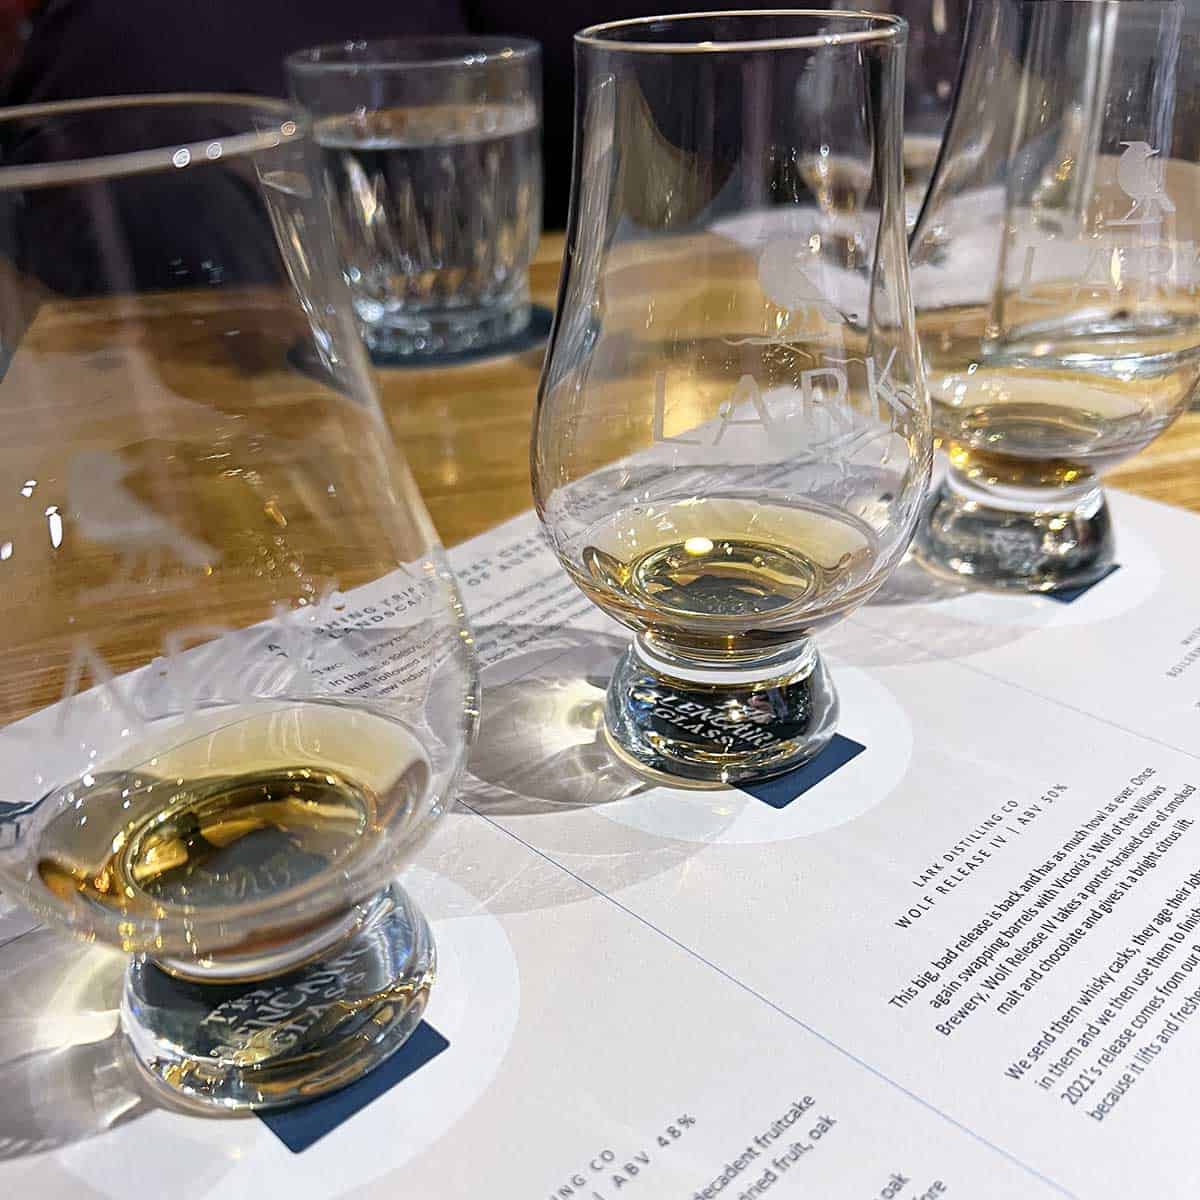 Whisky flight at Lark Distillery in Hobart